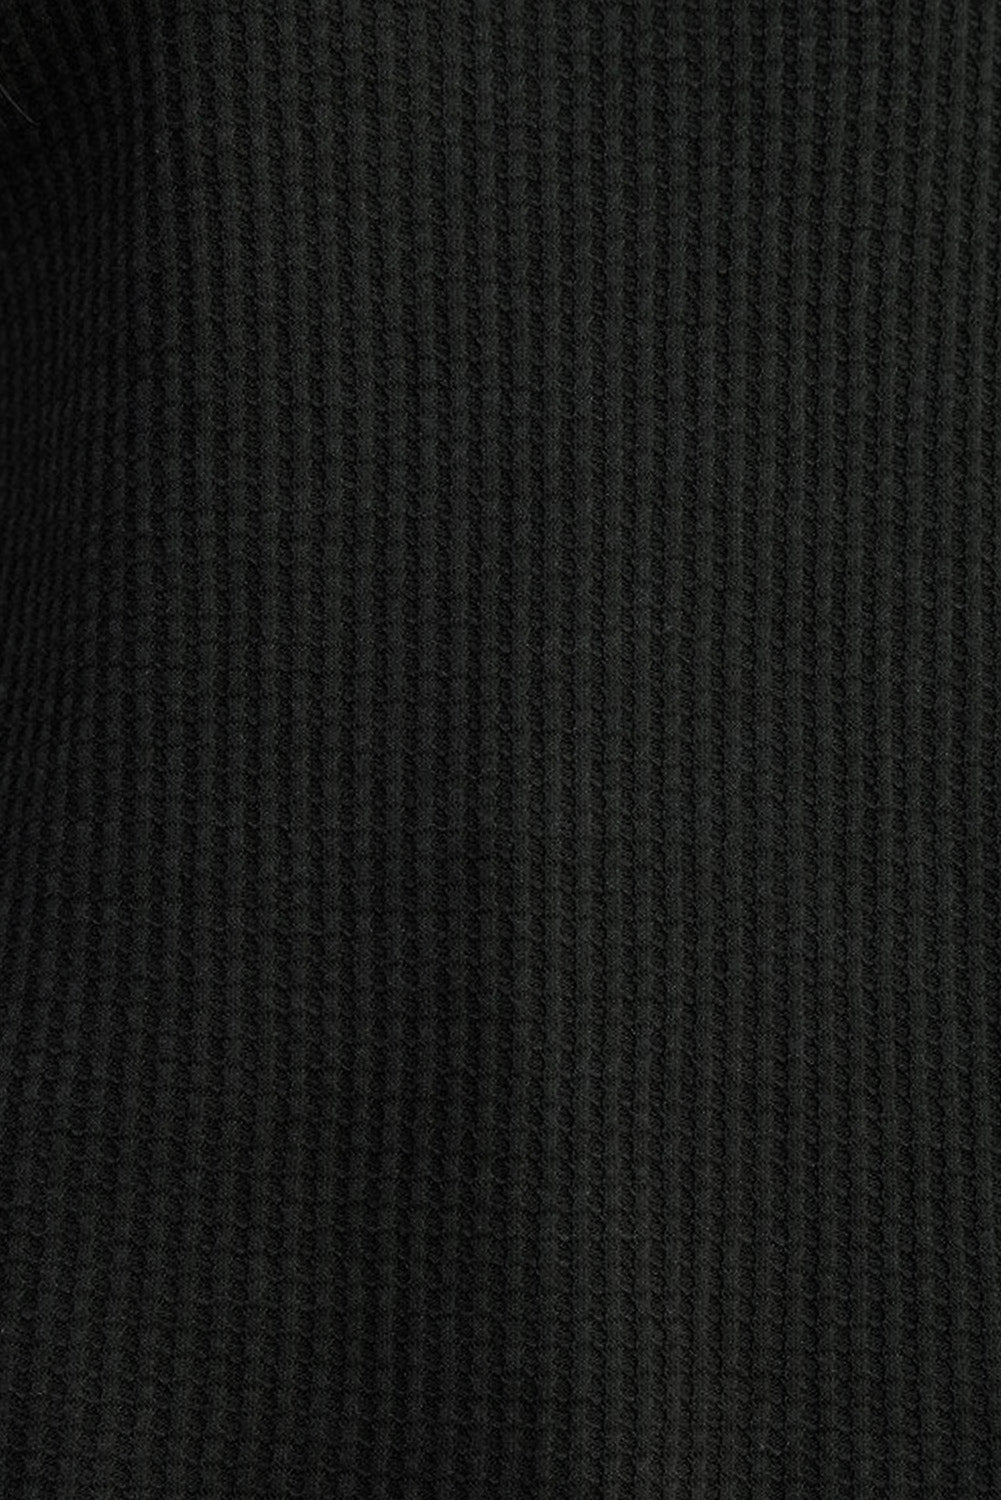 Haut noir en tricot gaufré à bordure côtelée et col rond